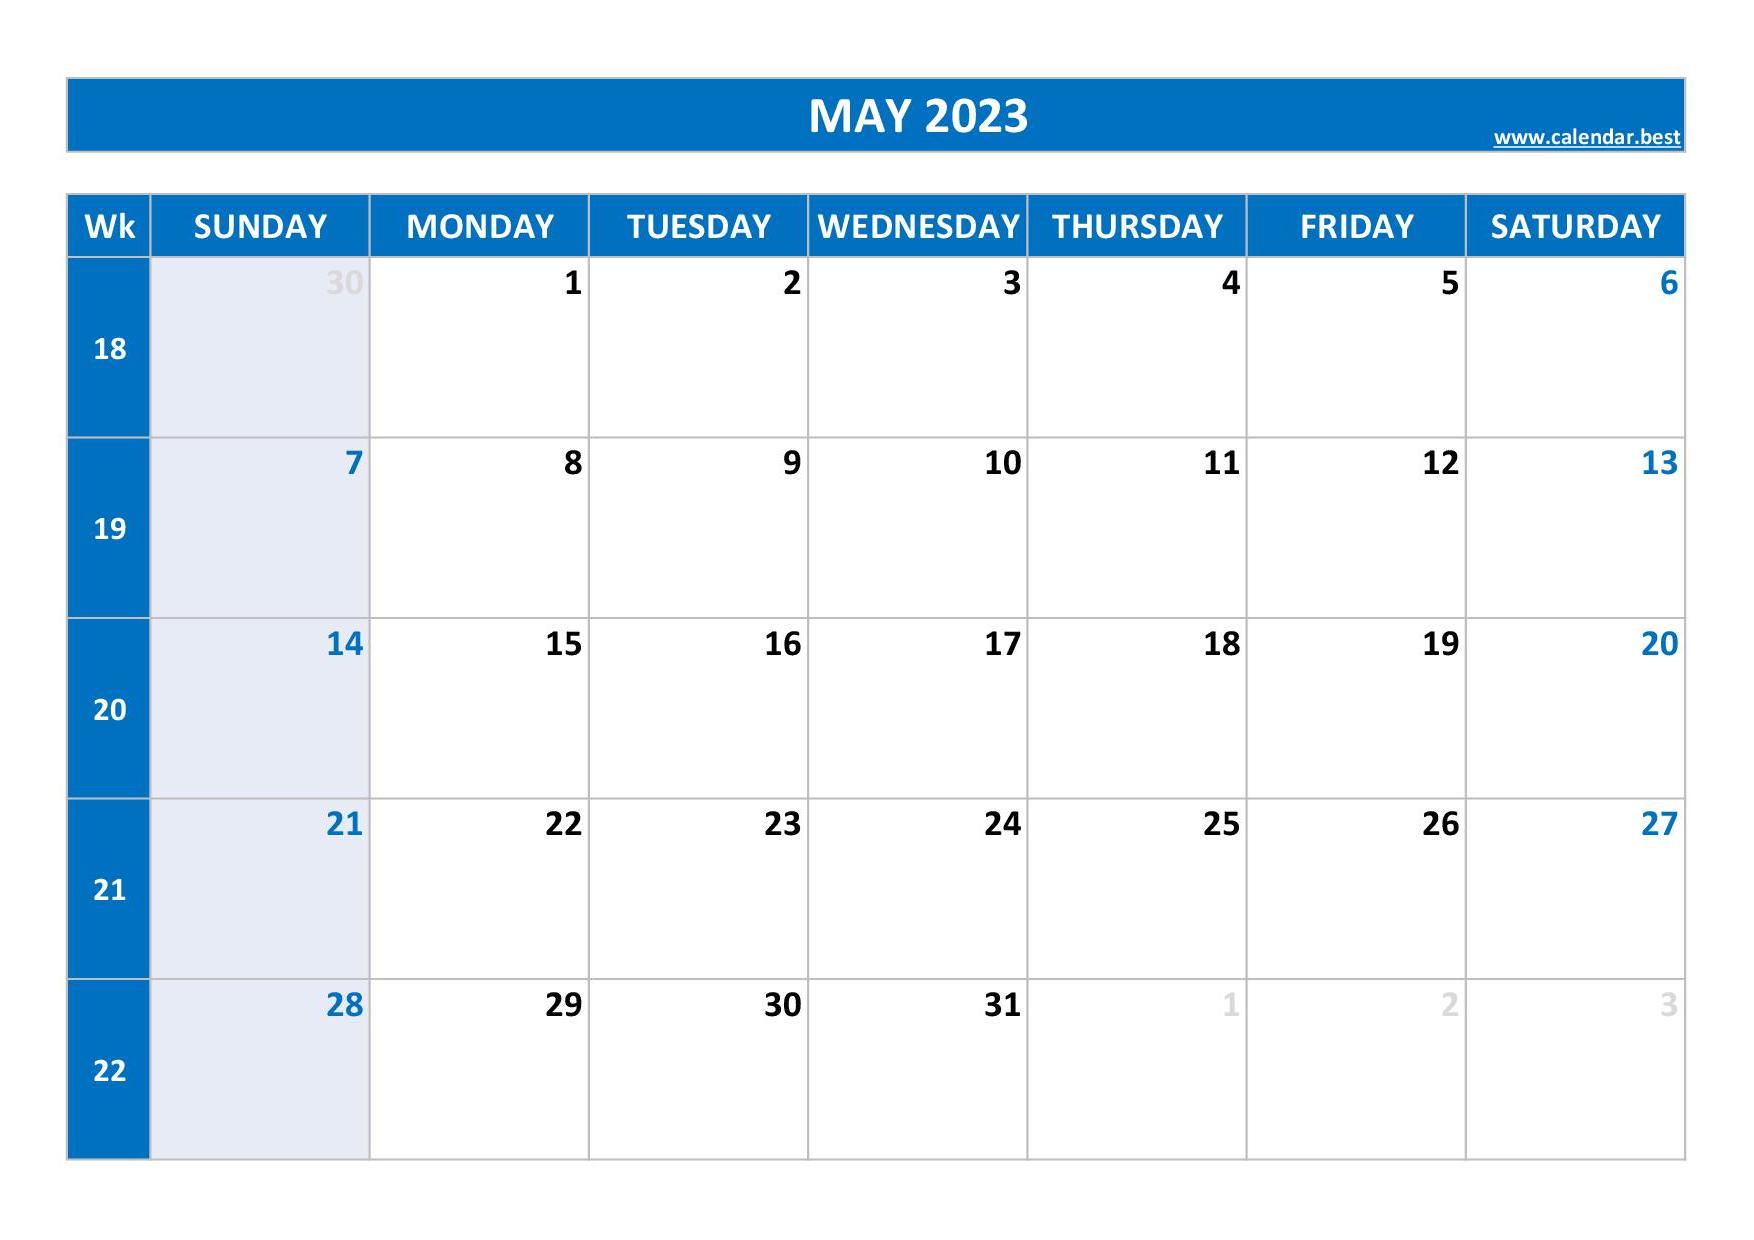 may-2023-calendar-week-get-calendar-2023-update